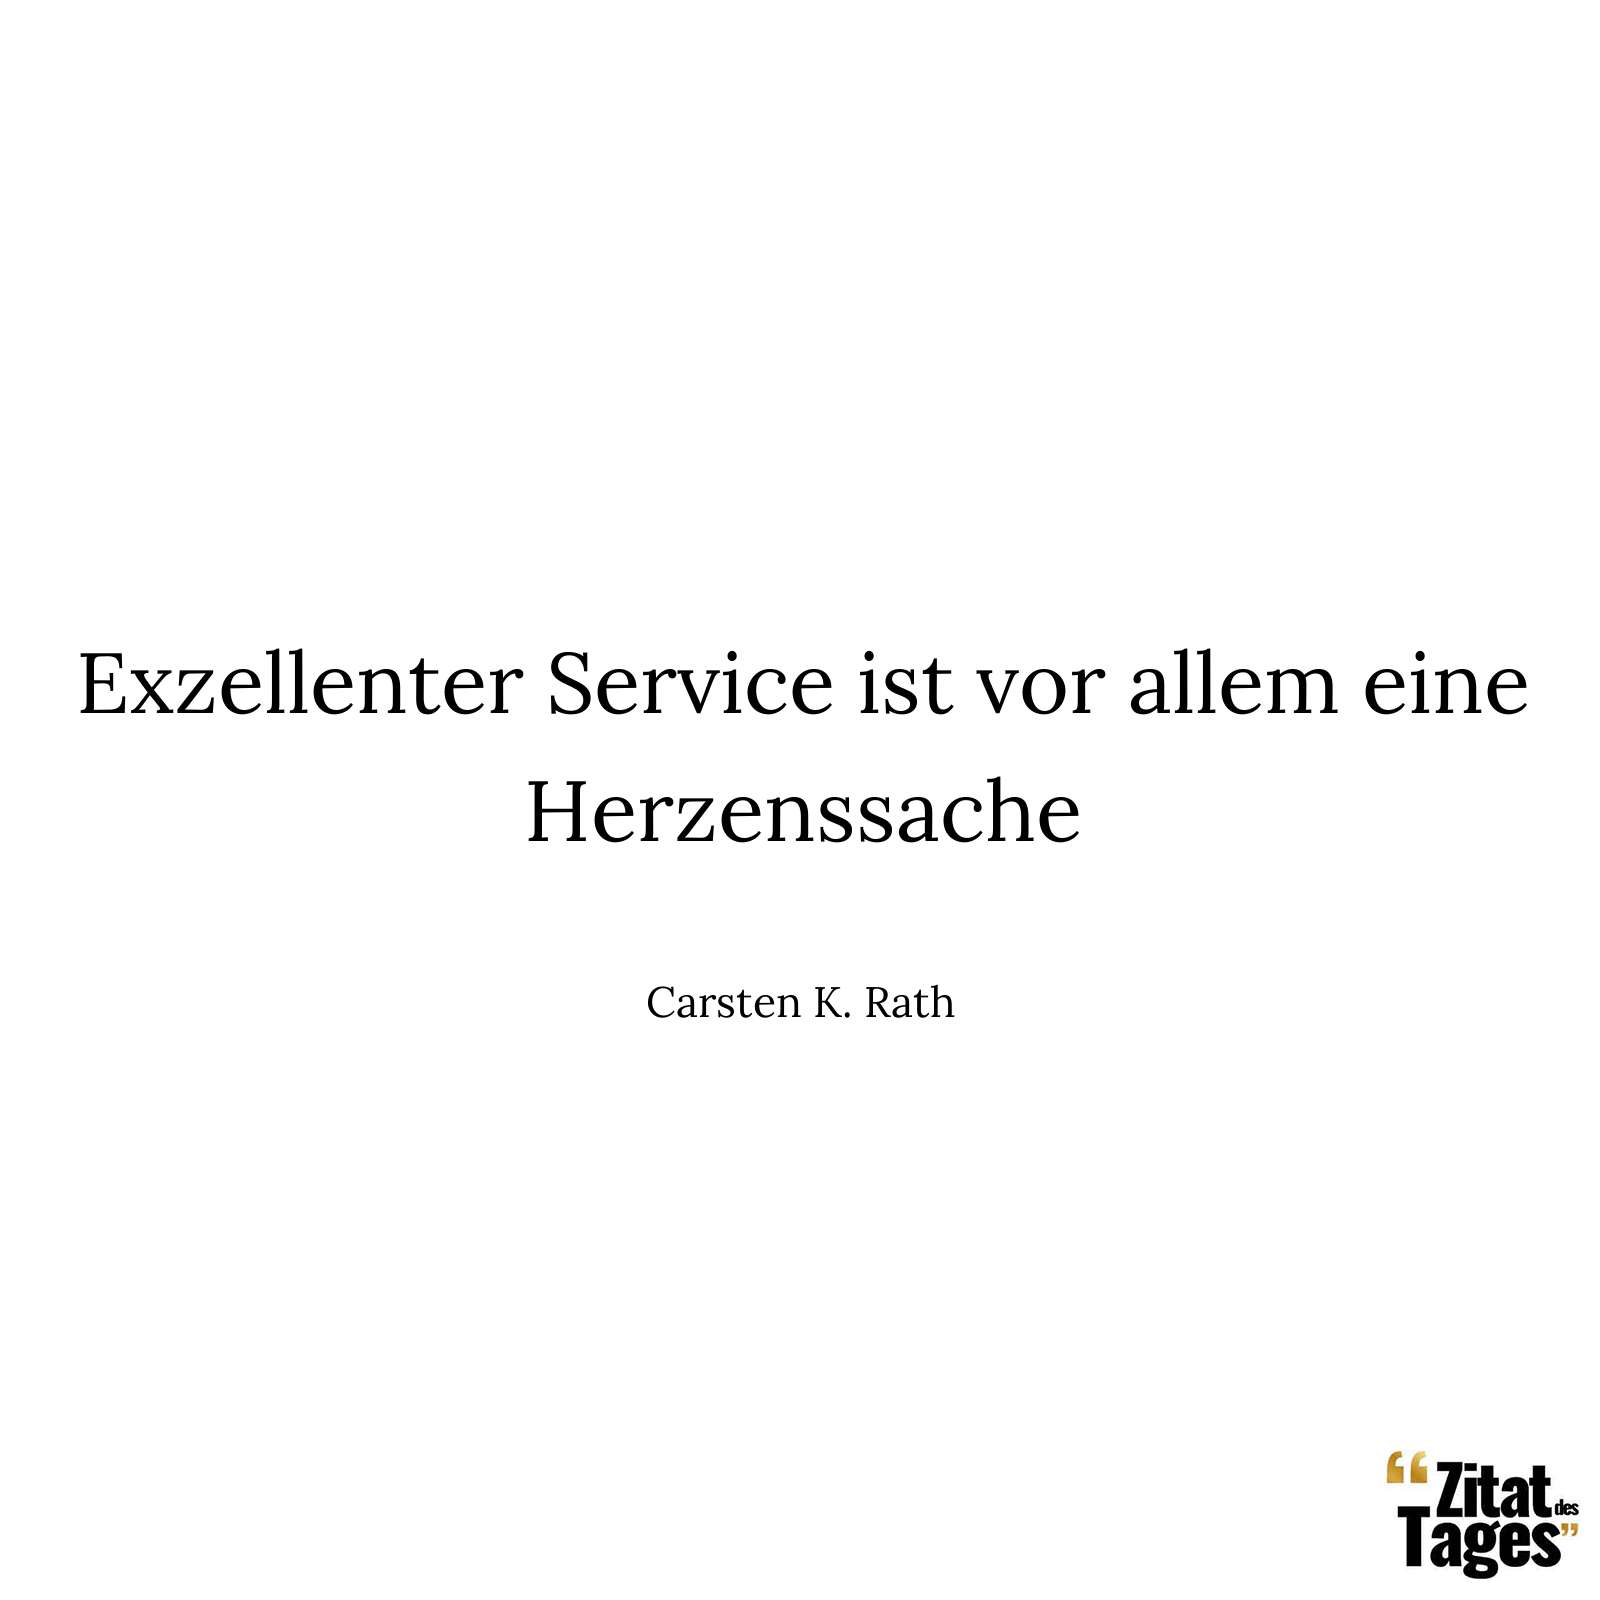 Exzellenter Service ist vor allem eine Herzenssache - Carsten K. Rath